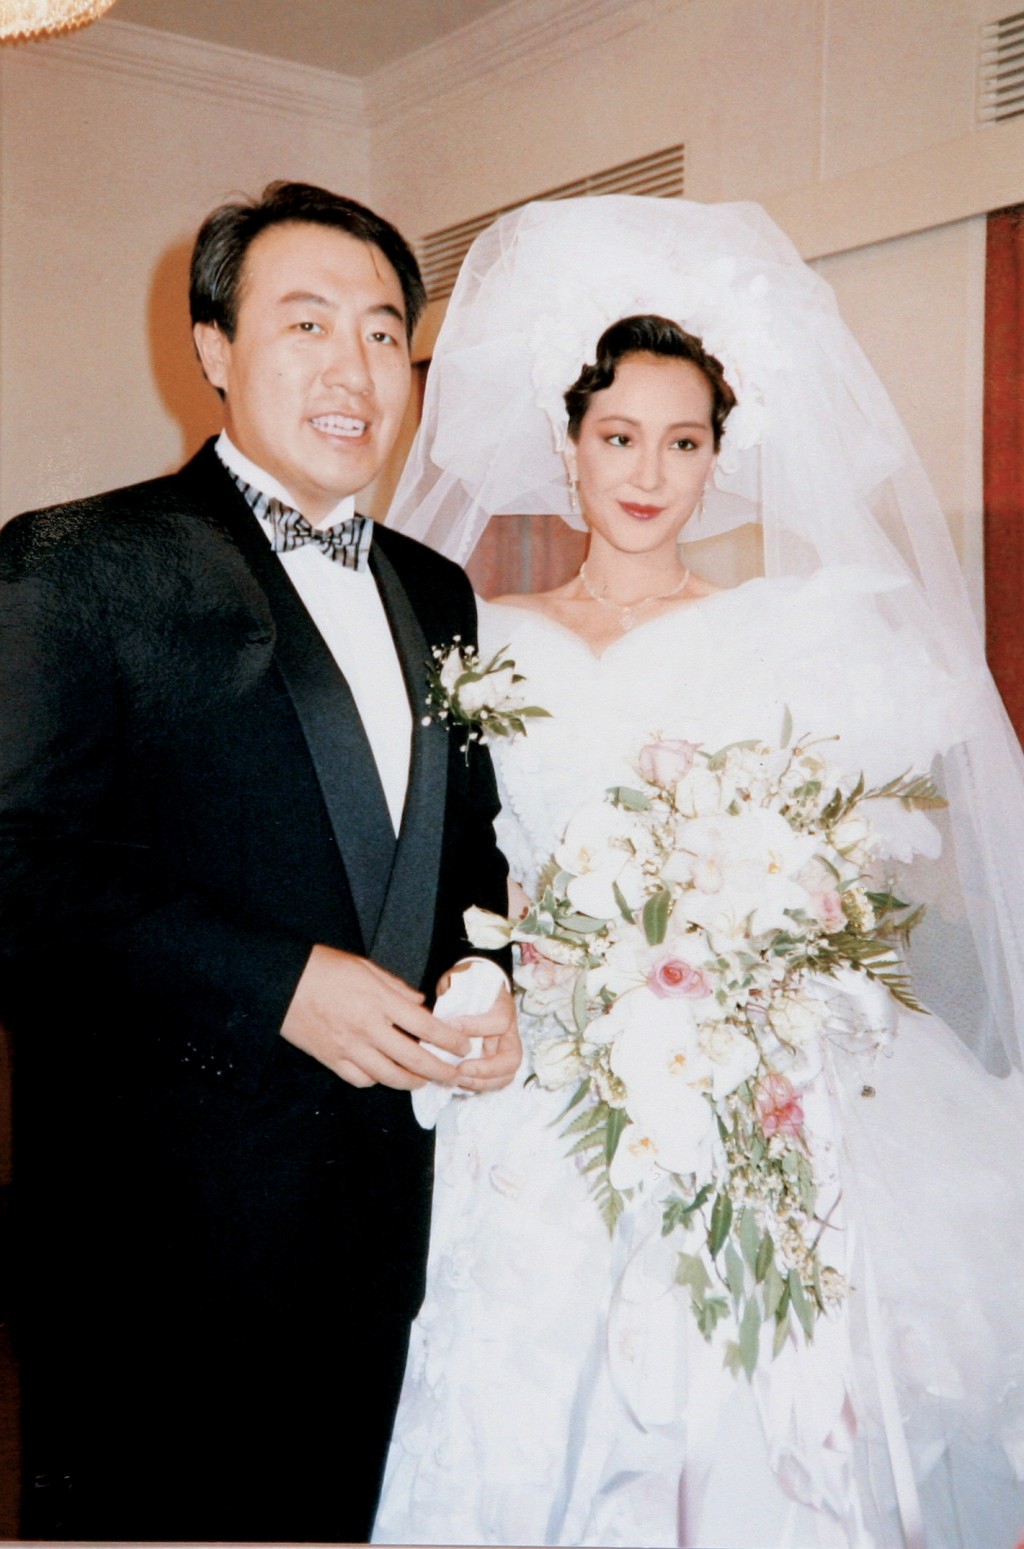 其后认识富商马清伟，拍拖三个月就决定闪婚，育有两子一女。